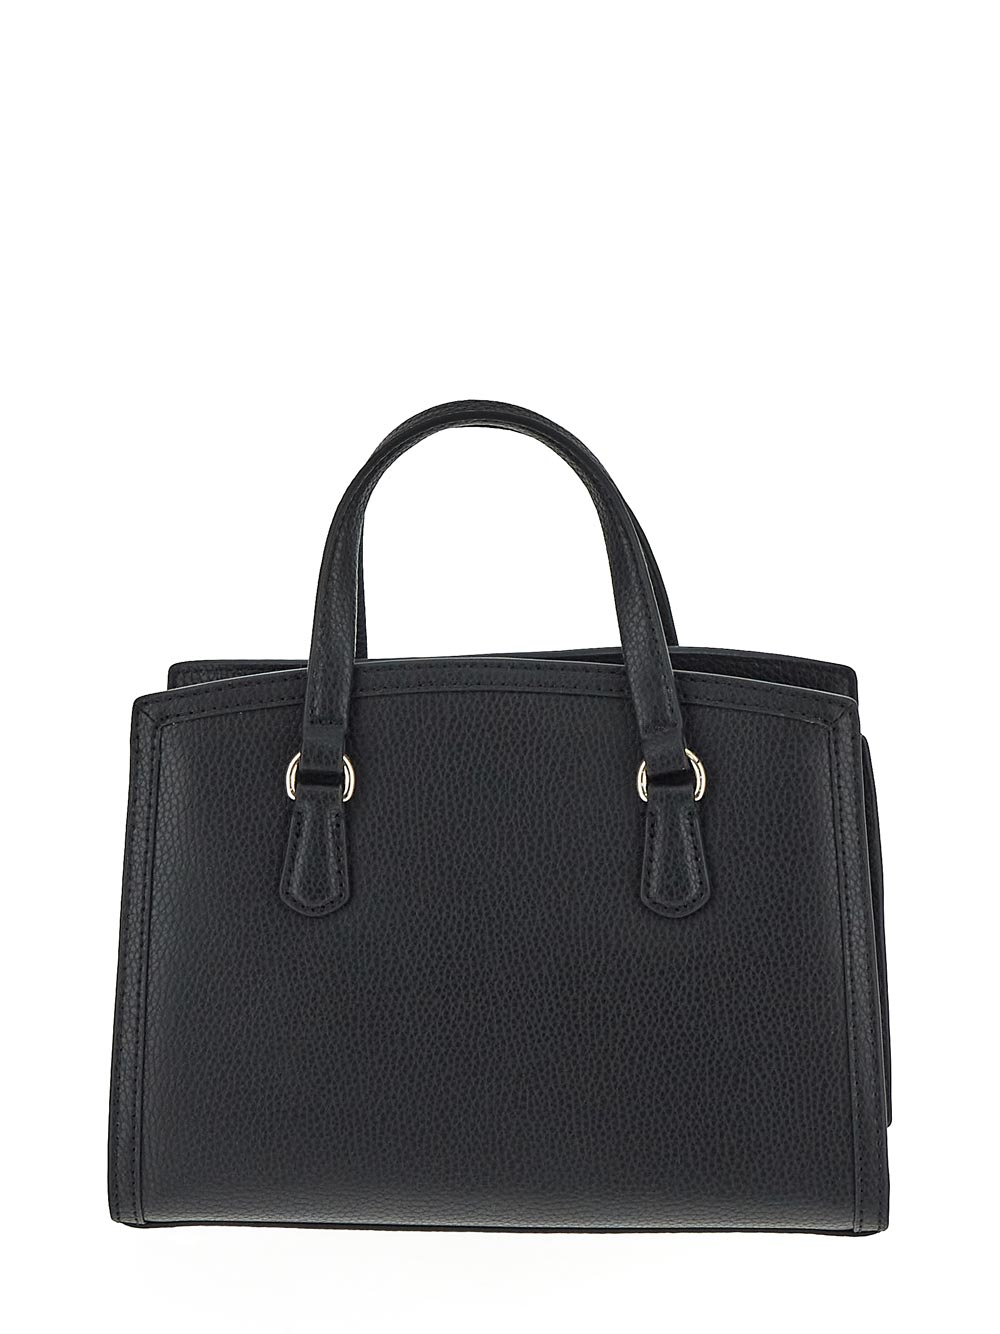 Michael Kors Chantal Small Leather Messenger Bag